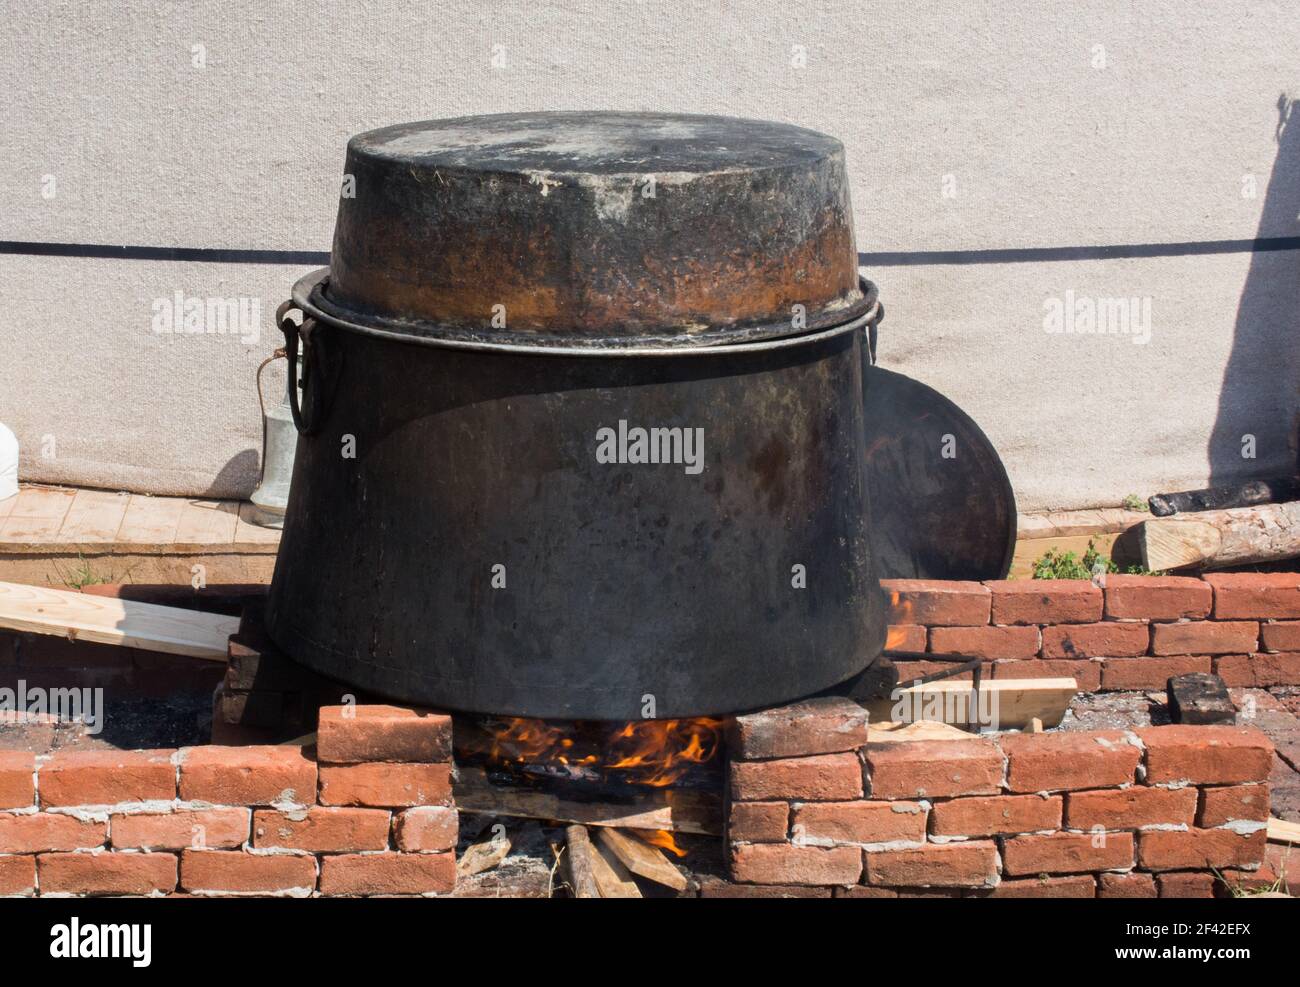 A closeup shot of an old metal pot on a bonfire outdoors Stock Photo